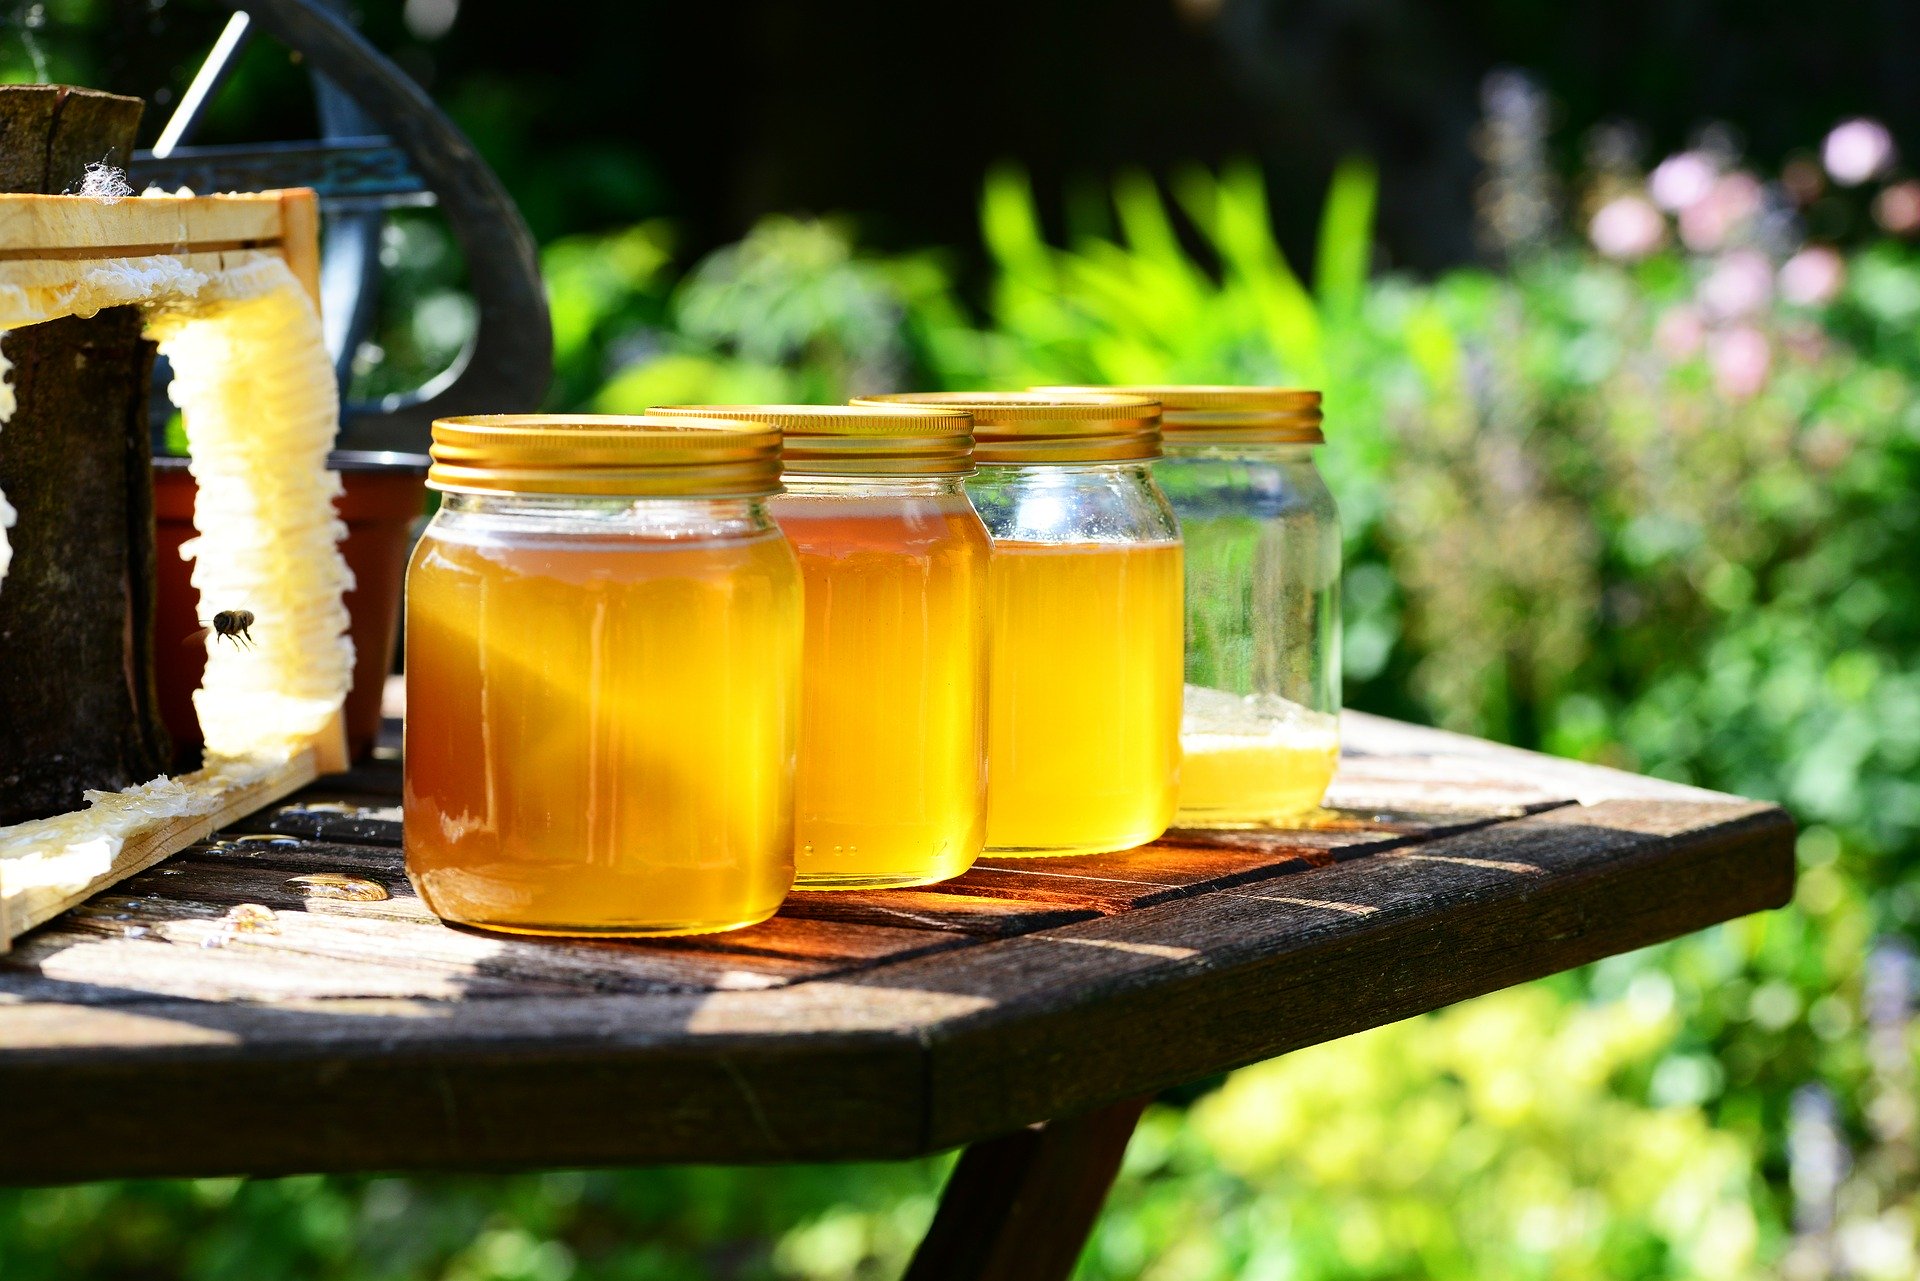 récolte de miel 2020 annee exceptionnelle